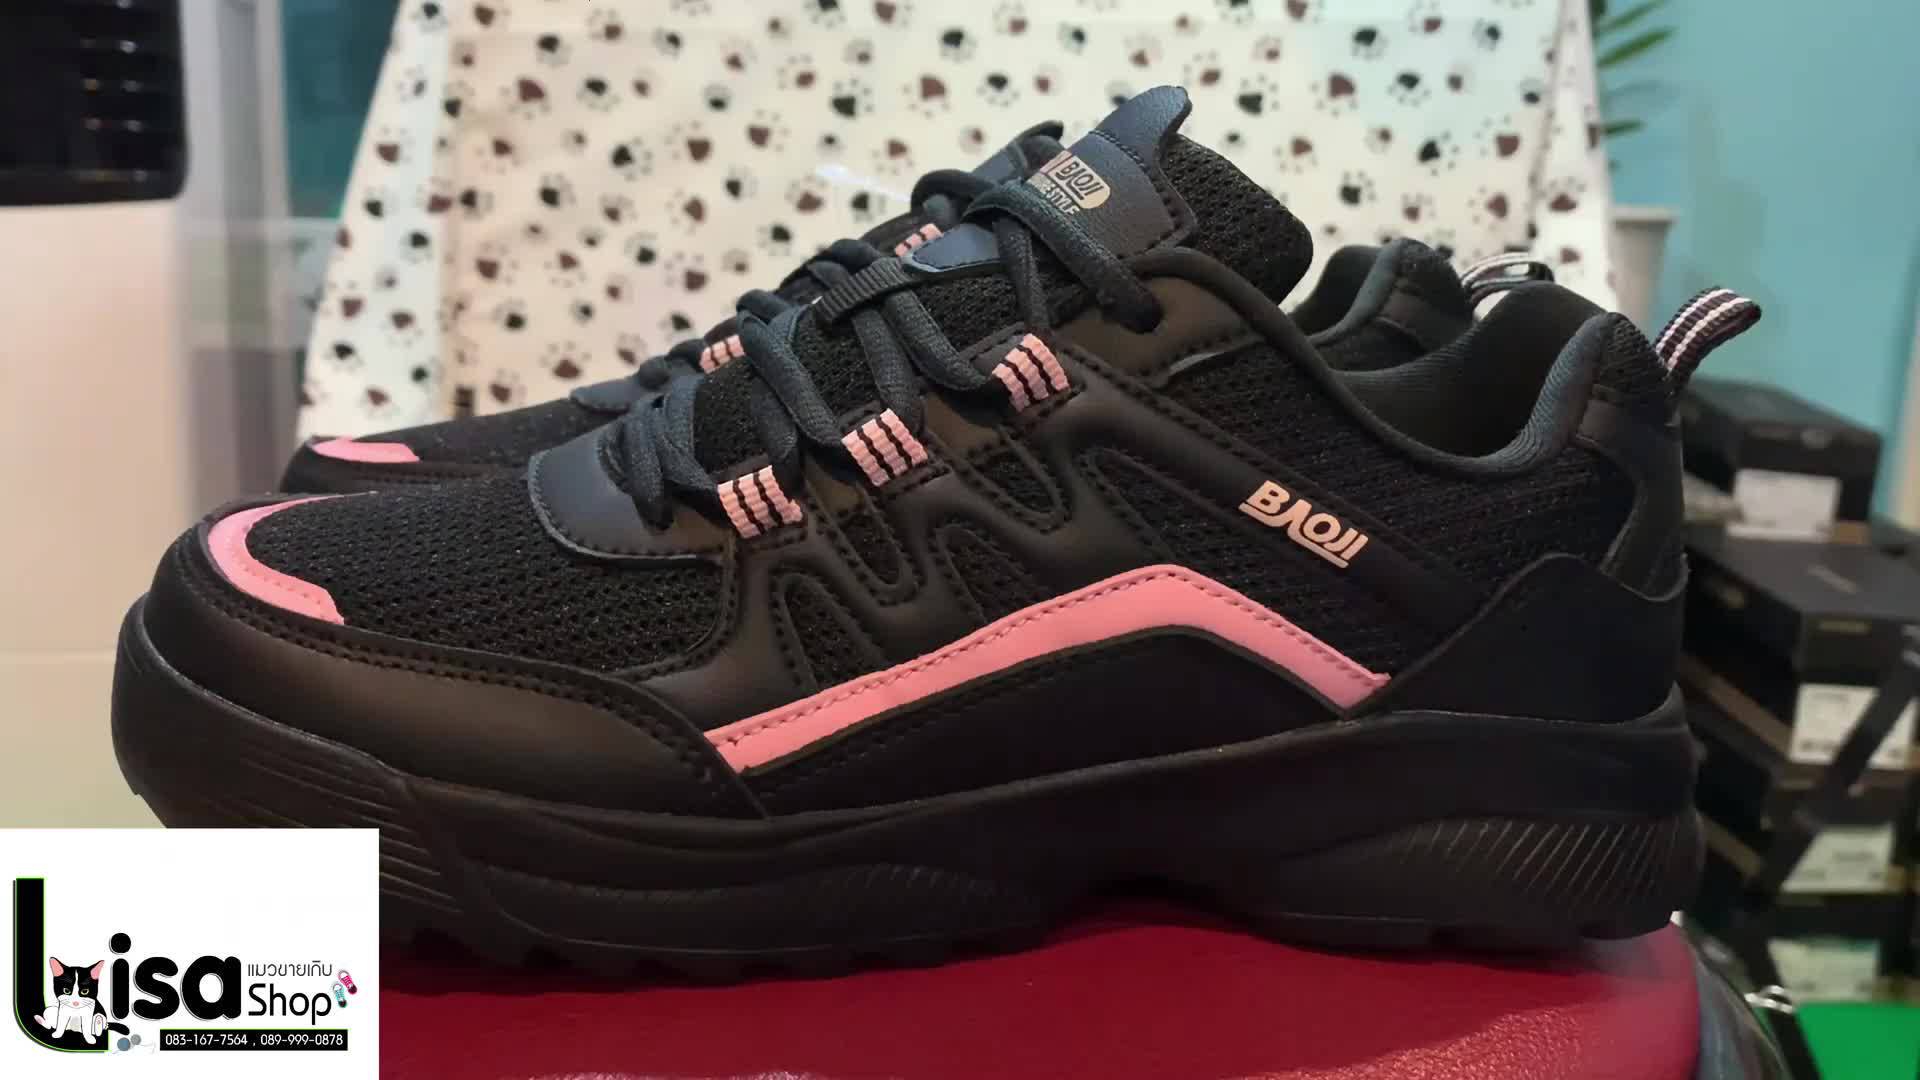 baoji-รุ่น-bjw-723-black-รองเท้าผ้าใบ-ผู้หญิง-สีดำ-แฟชั่น-สินค้าใหม่-มือ1-ลิขสิทธิ์ของแท้100-จาก-baoji-มีของ-พร้อมส่ง